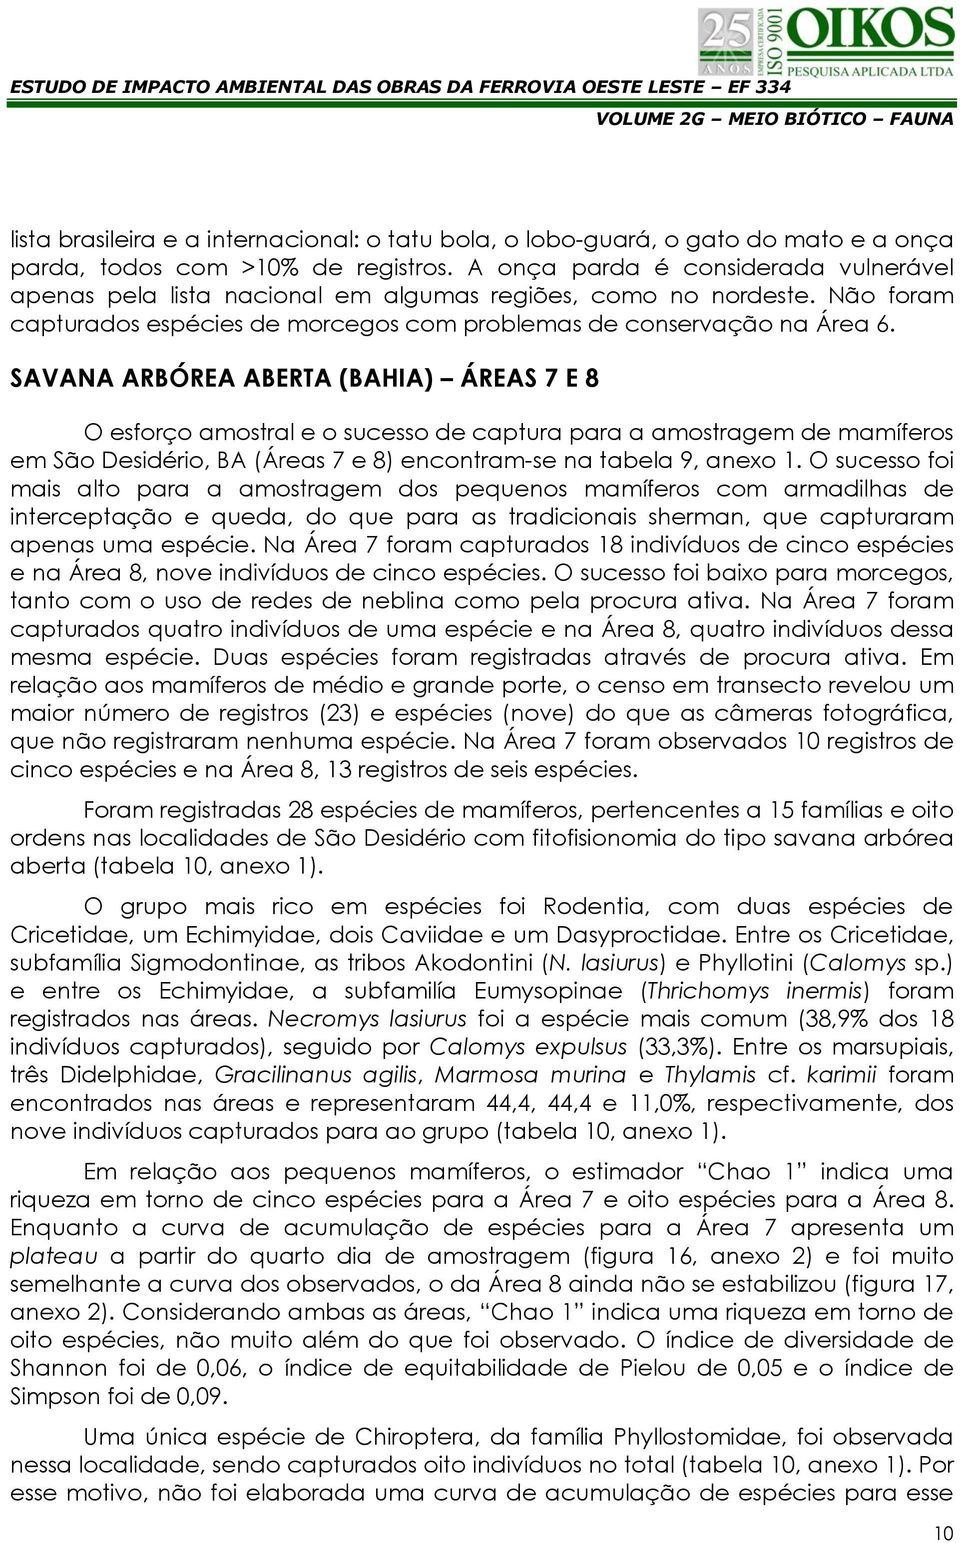 SAVANA ARBÓREA ABERTA (BAHIA) ÁREAS 7 E 8 O esforço amostral e o sucesso de captura para a amostragem de mamíferos em São Desidério, BA (Áreas 7 e 8) encontram-se na tabela 9, anexo 1.